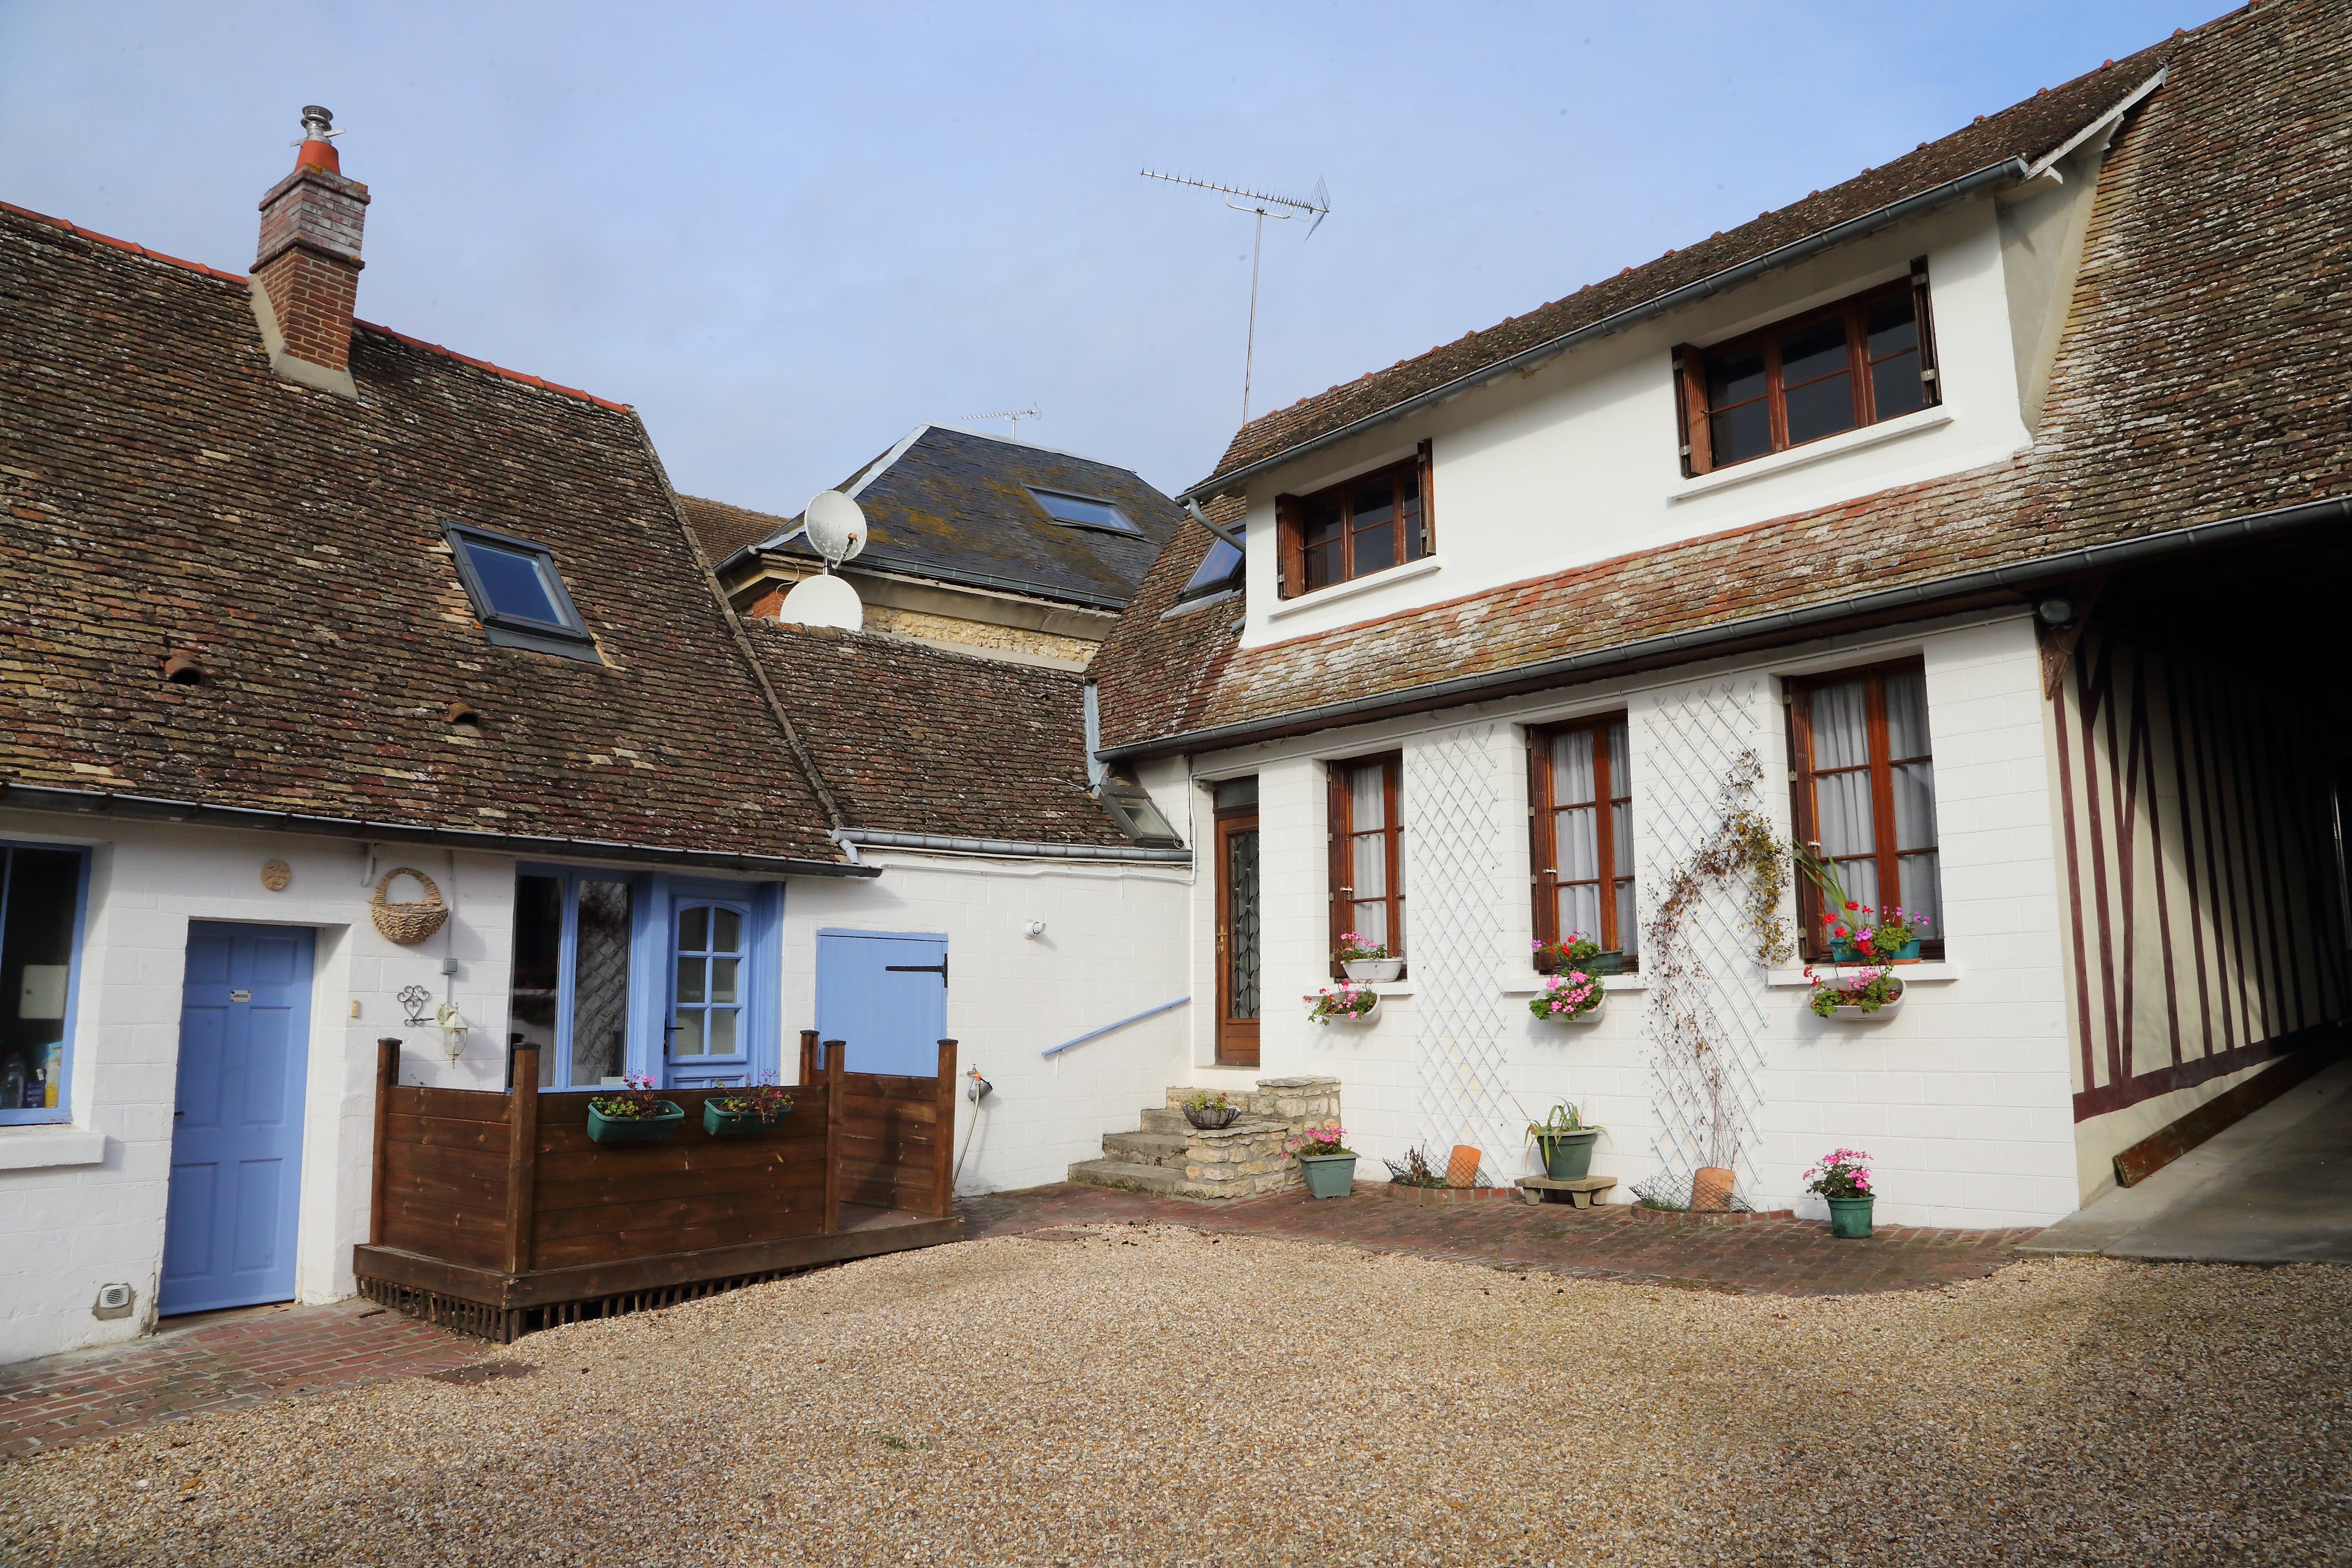 Chez Robins, la maison  France Hauts-de-France Oise Trie-Château 60590